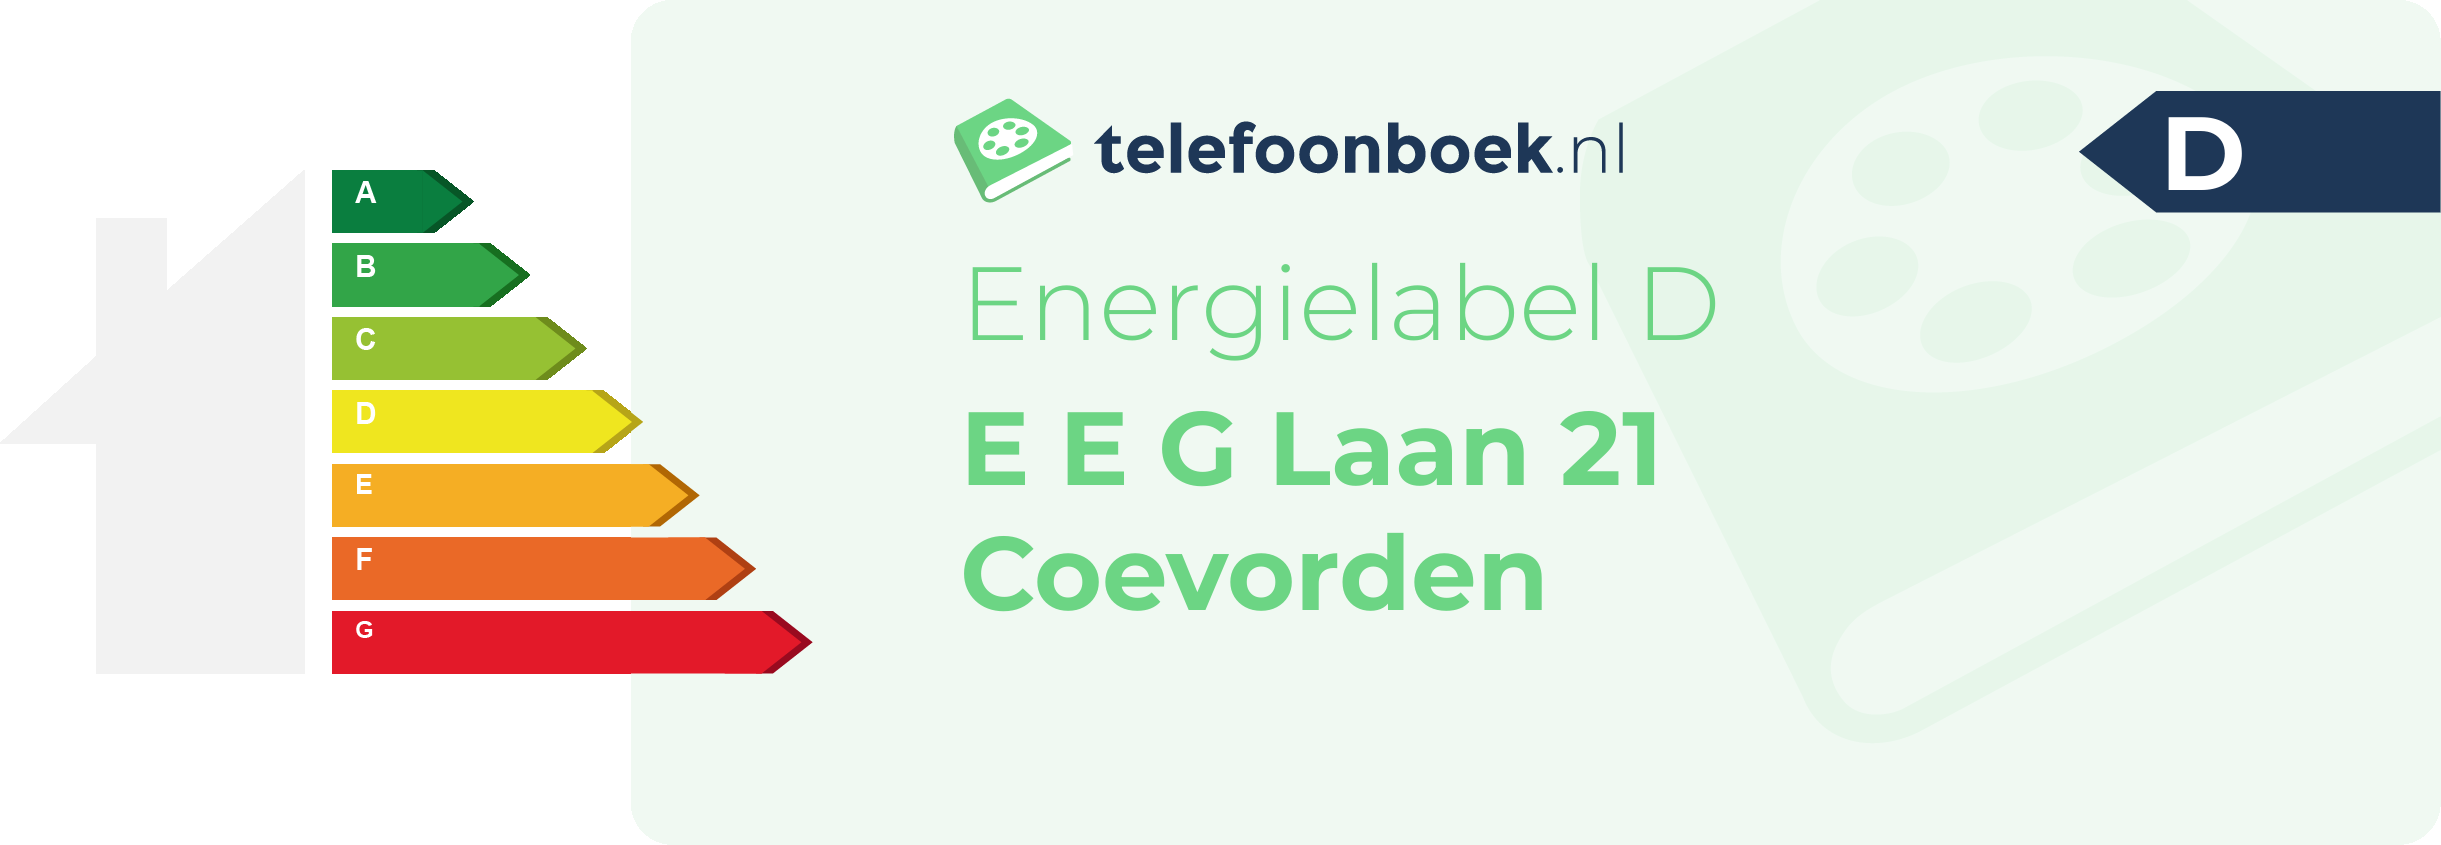 Energielabel E E G Laan 21 Coevorden